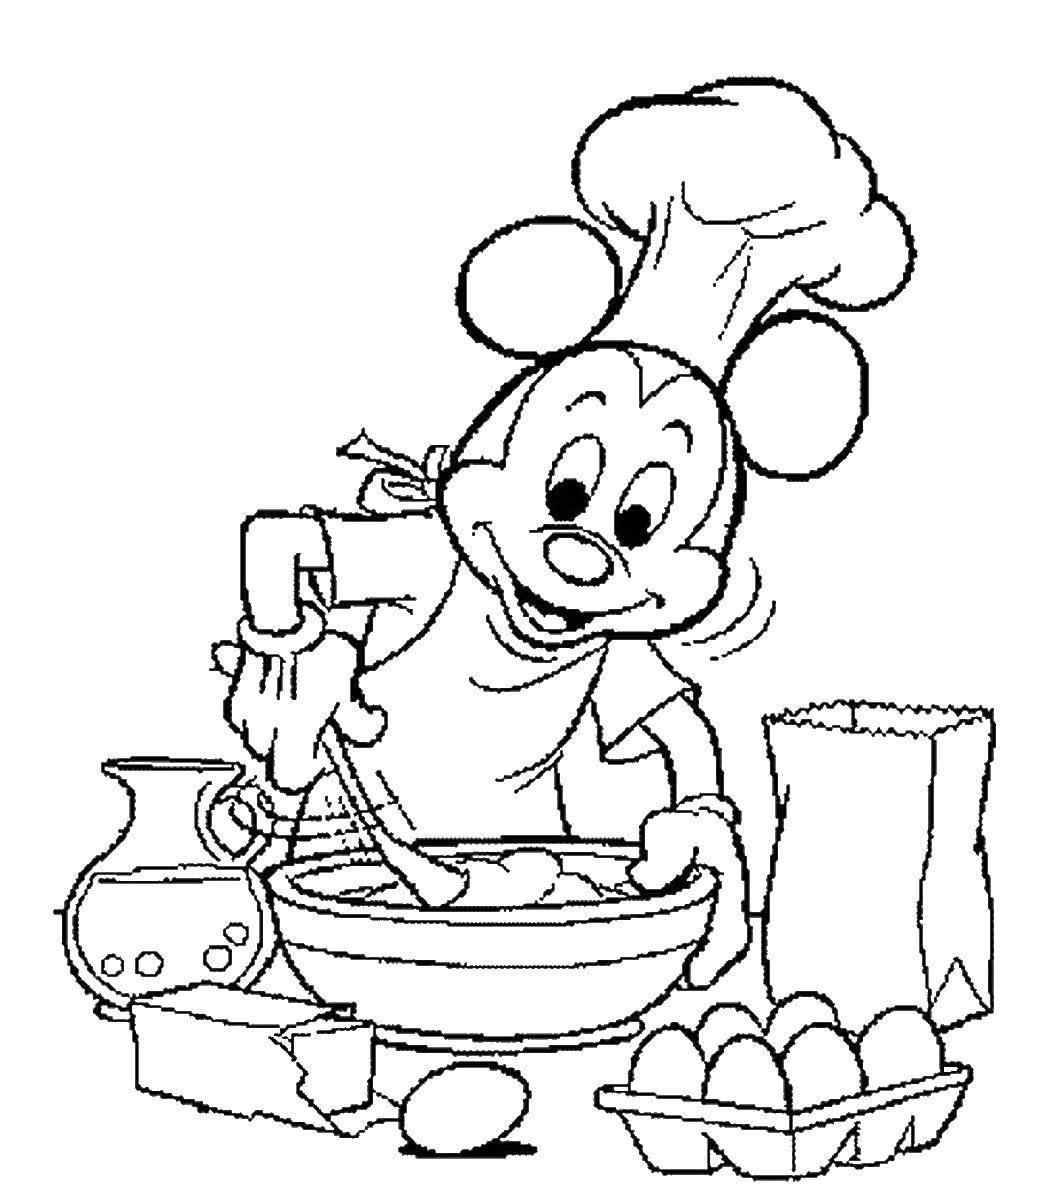 Название: Раскраска Микки маус готовит еду. Категория: Готовим еду. Теги: еда, повар, Микки маус.